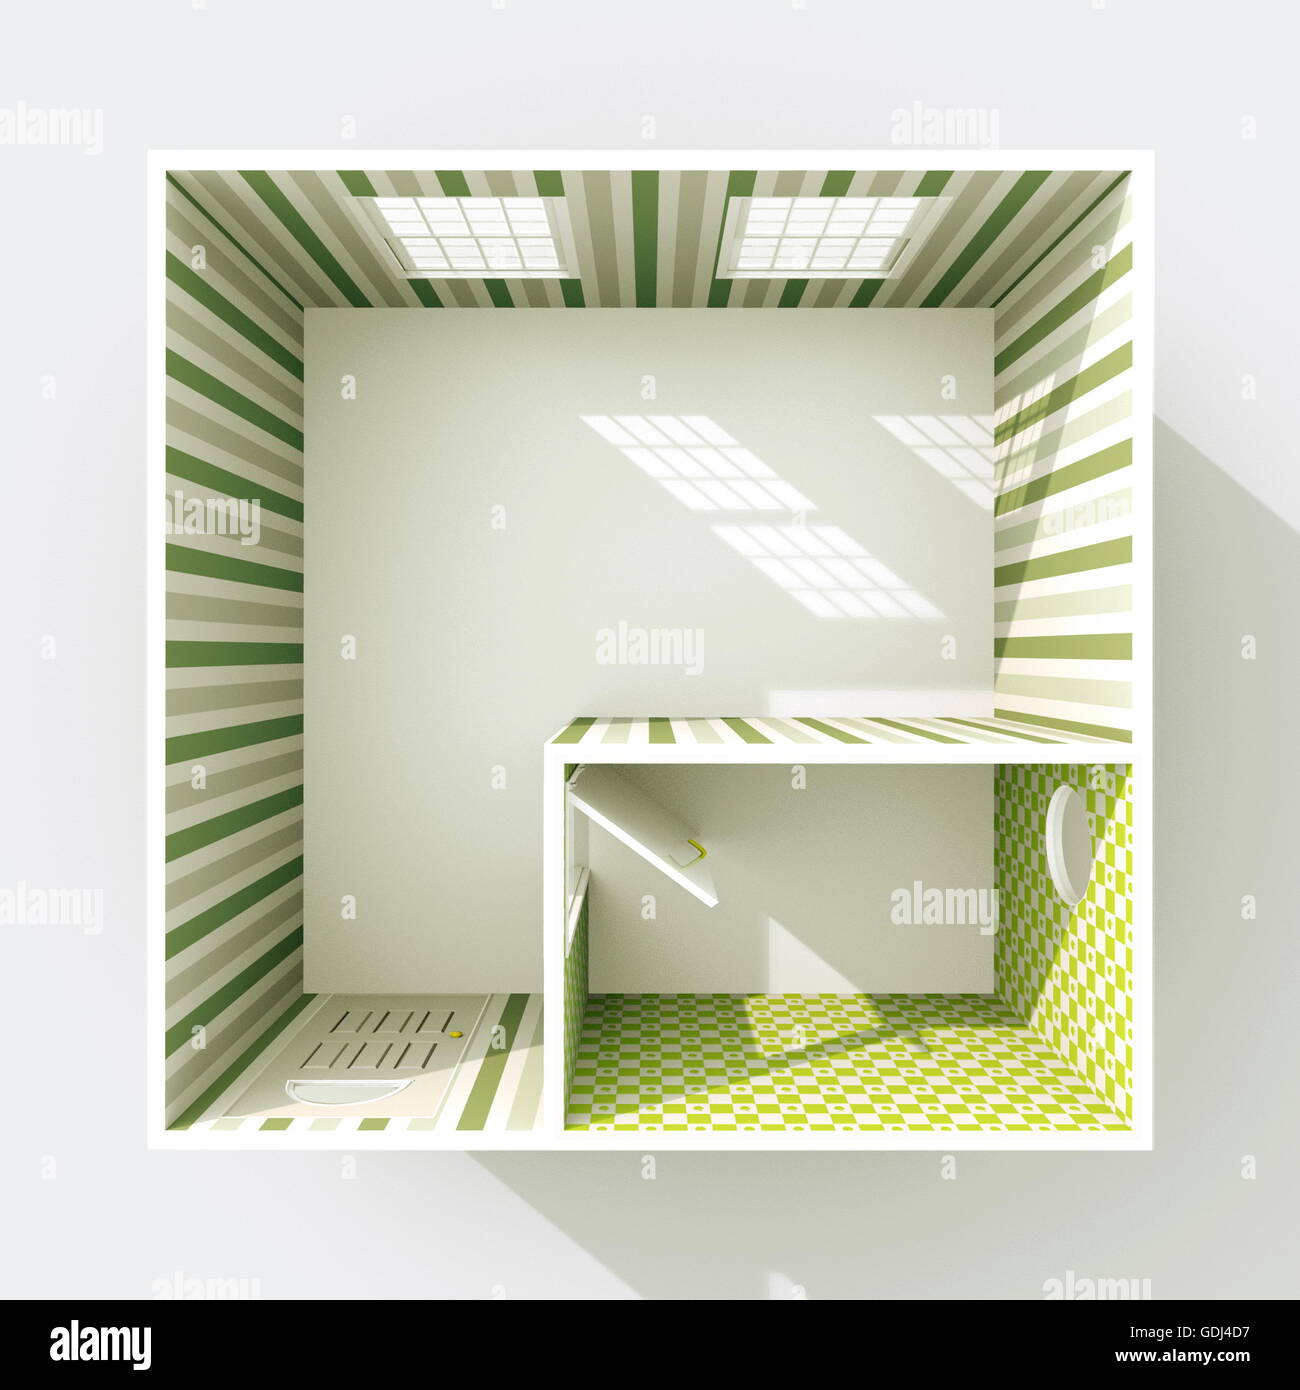 3D Interni rendering vista in pianta del vuoto home appartamento verde con carta da parati a strisce di materiali Foto Stock